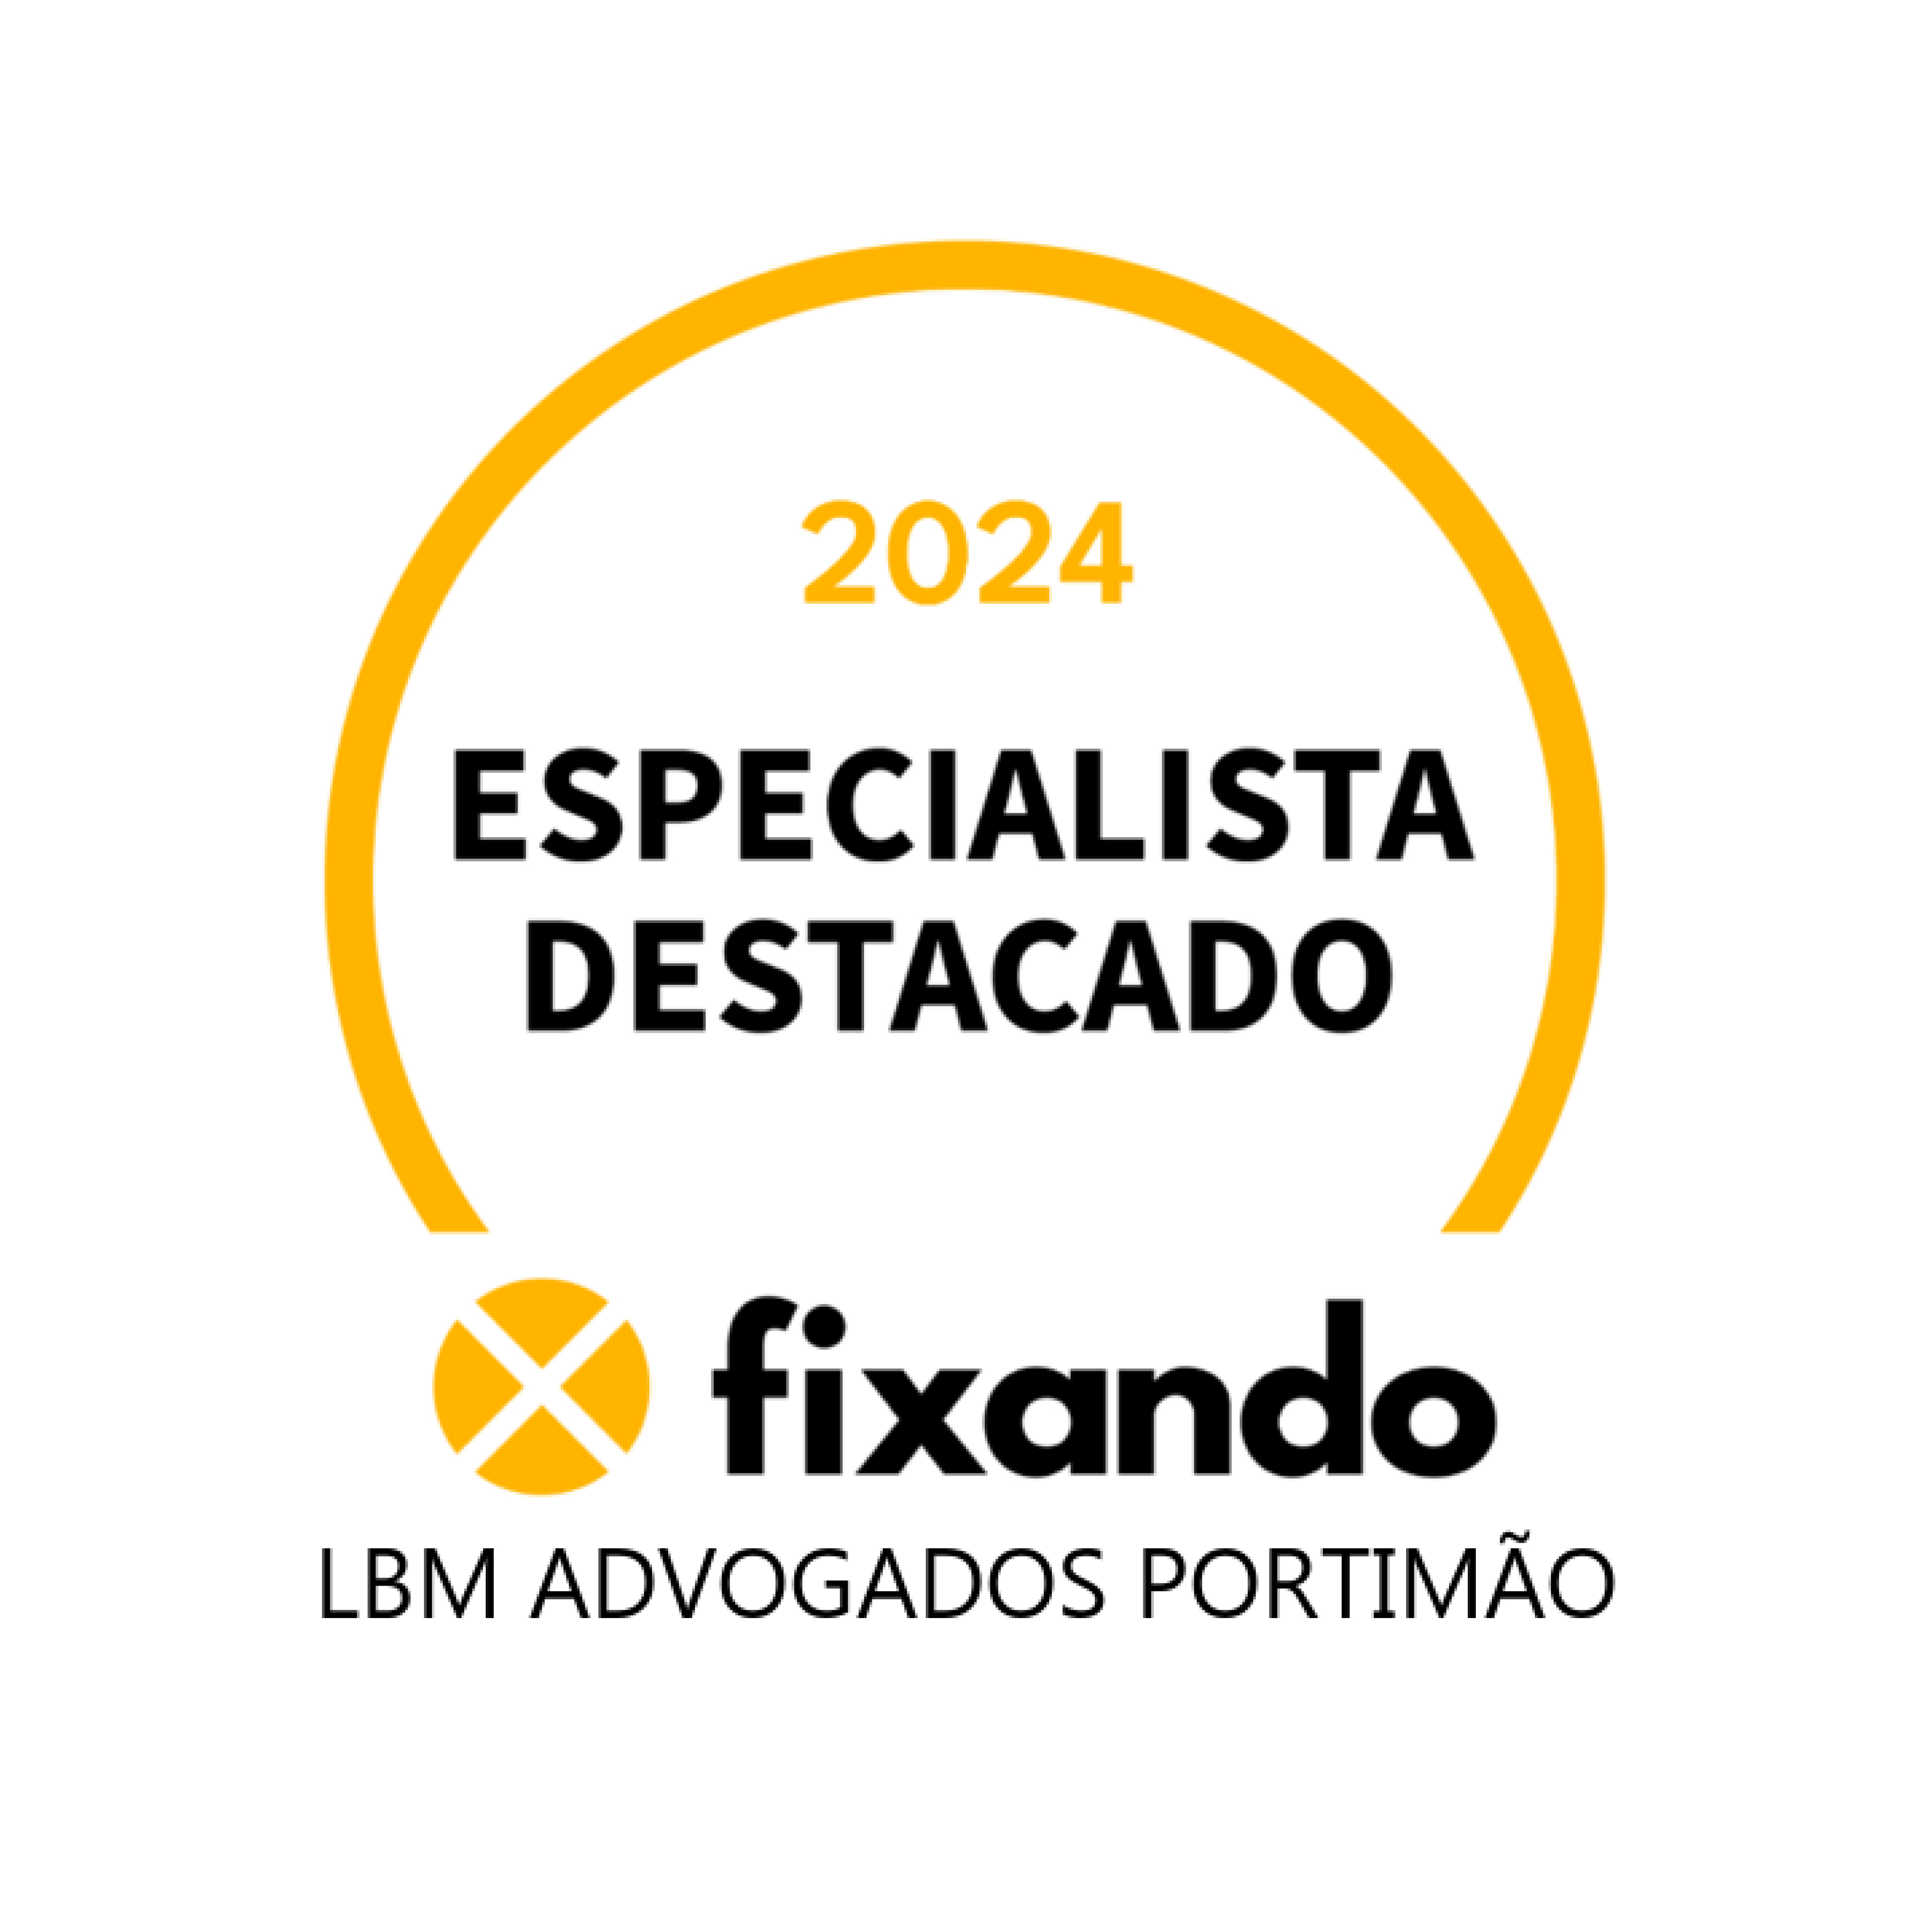 LBM Advogados Portimão - Portimão - Serviços Jurídicos